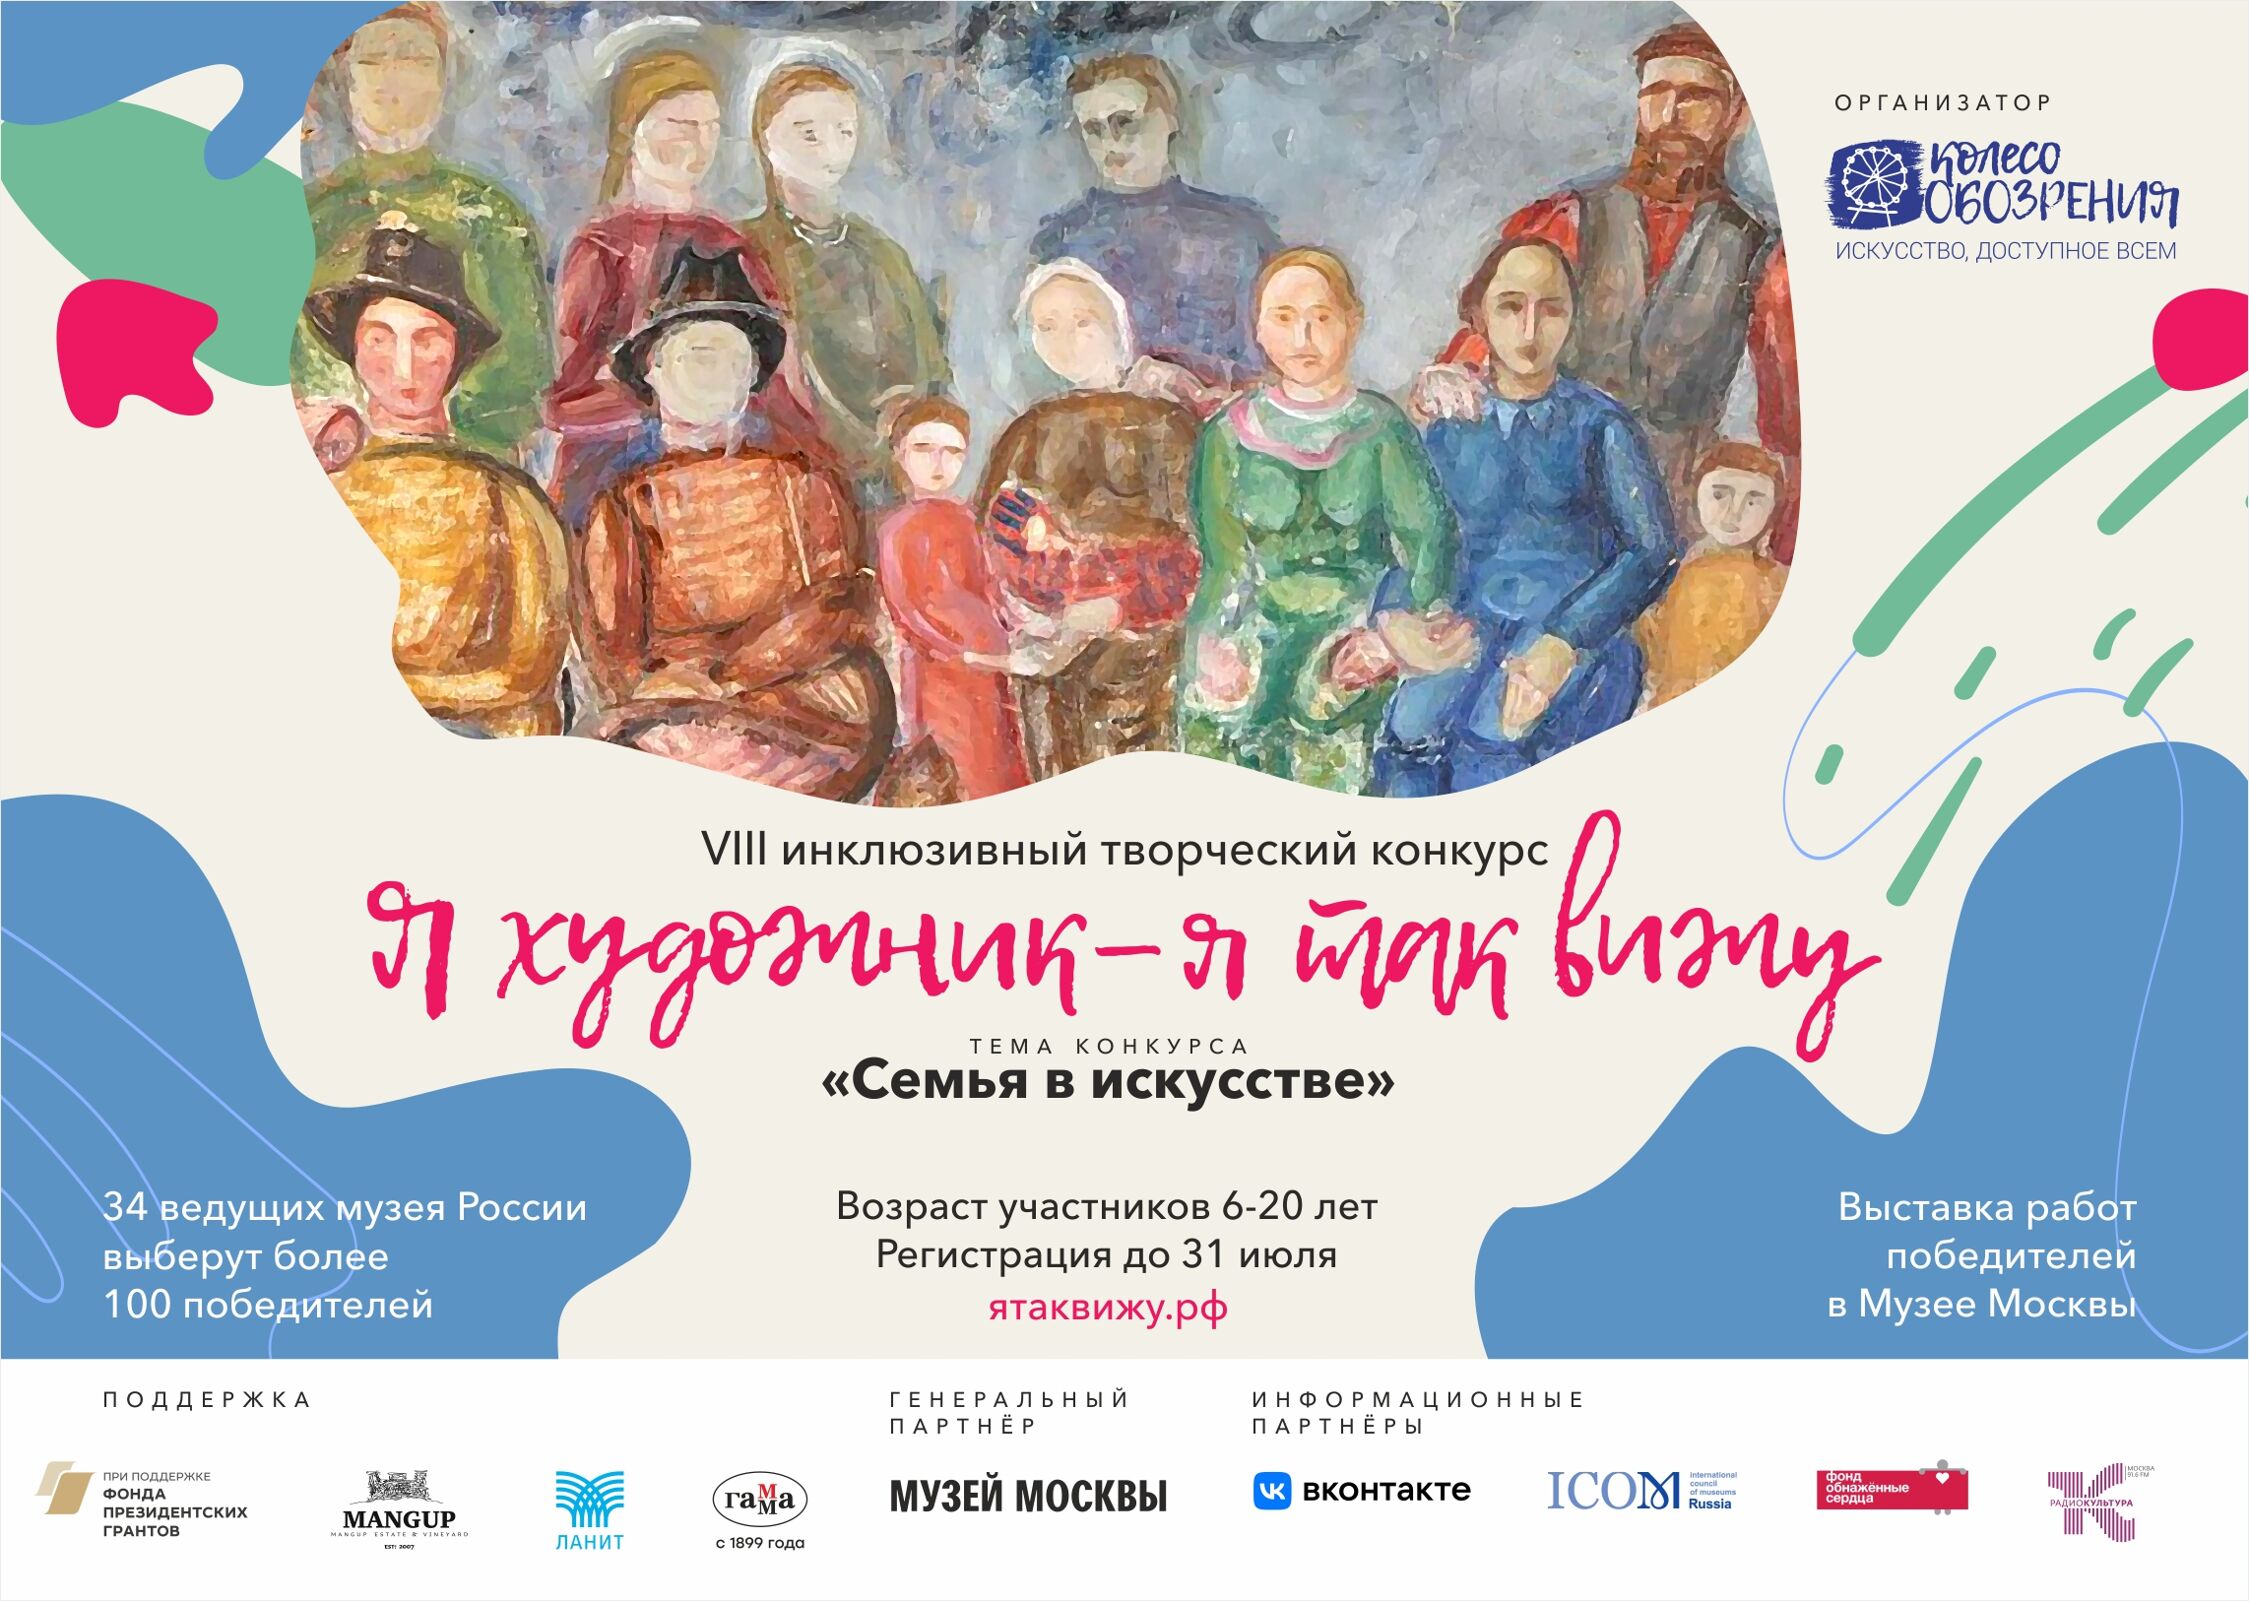 Инклюзивный конкурс юных художников проводится в России при участии музеев Ярославской области